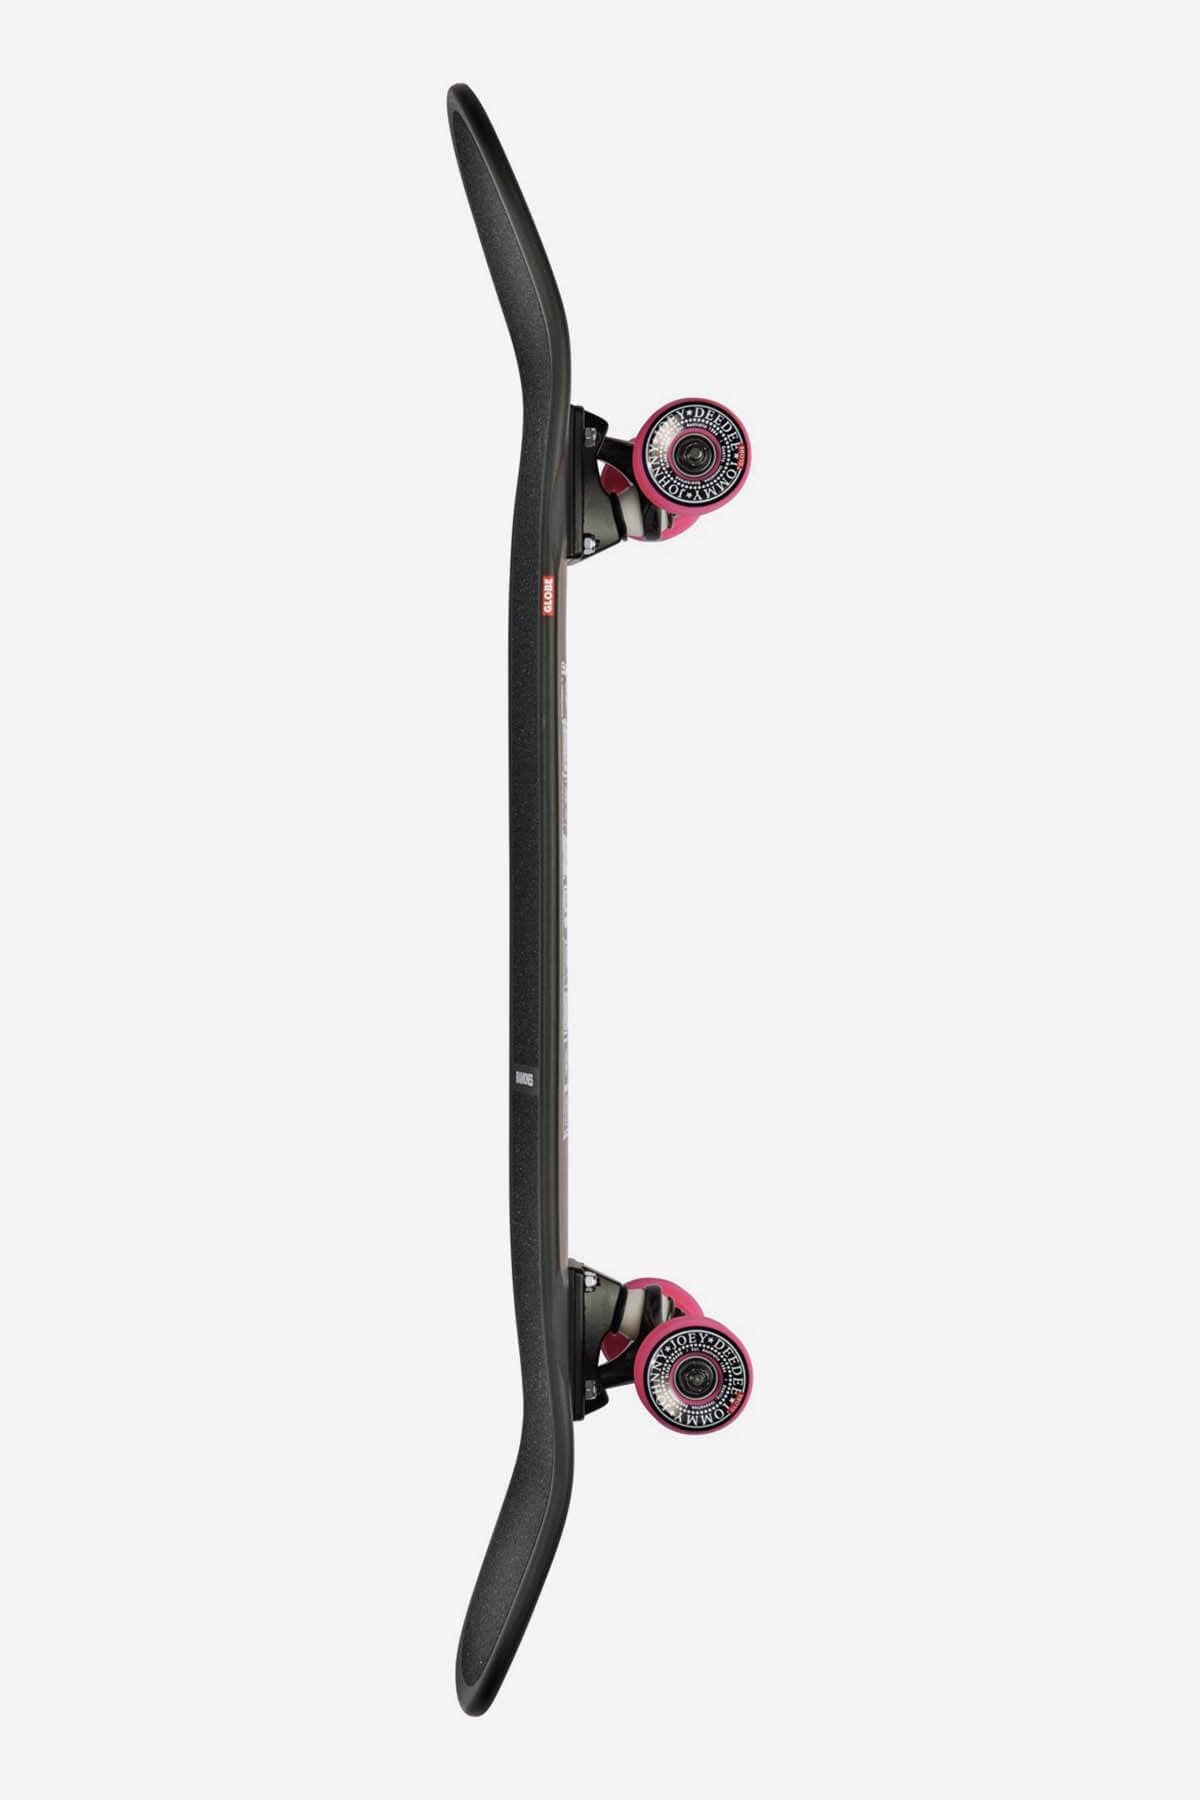 Globe Skateboard completen Shooter - 8.625" Compleet Skateboard in RAMONES/HEY HO